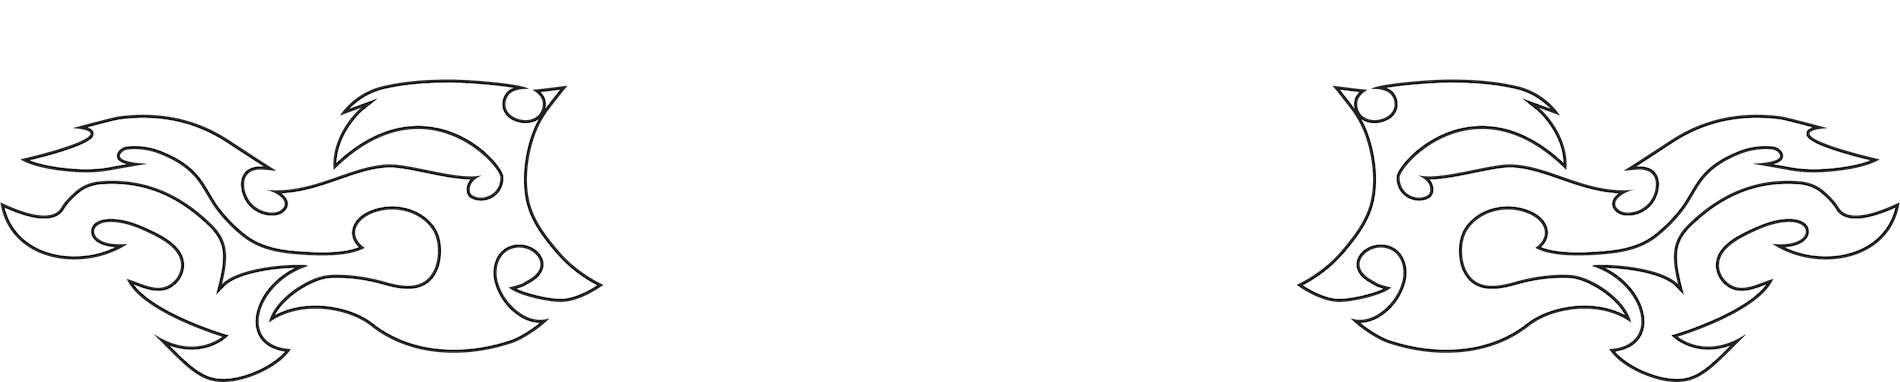 Ice Western Logo White